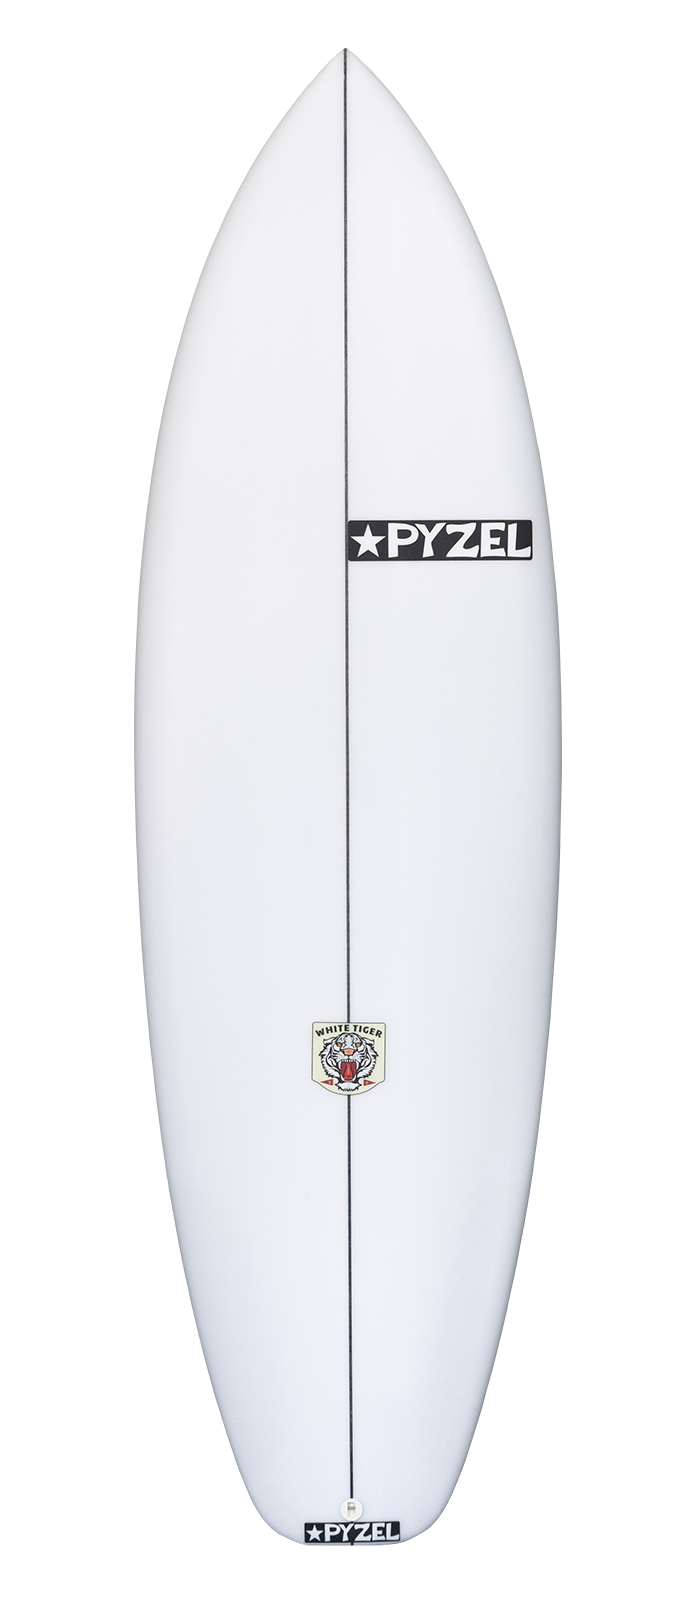 Planche de surf PYZEL White Tiger 5'11 - 37,5Lts FCSII